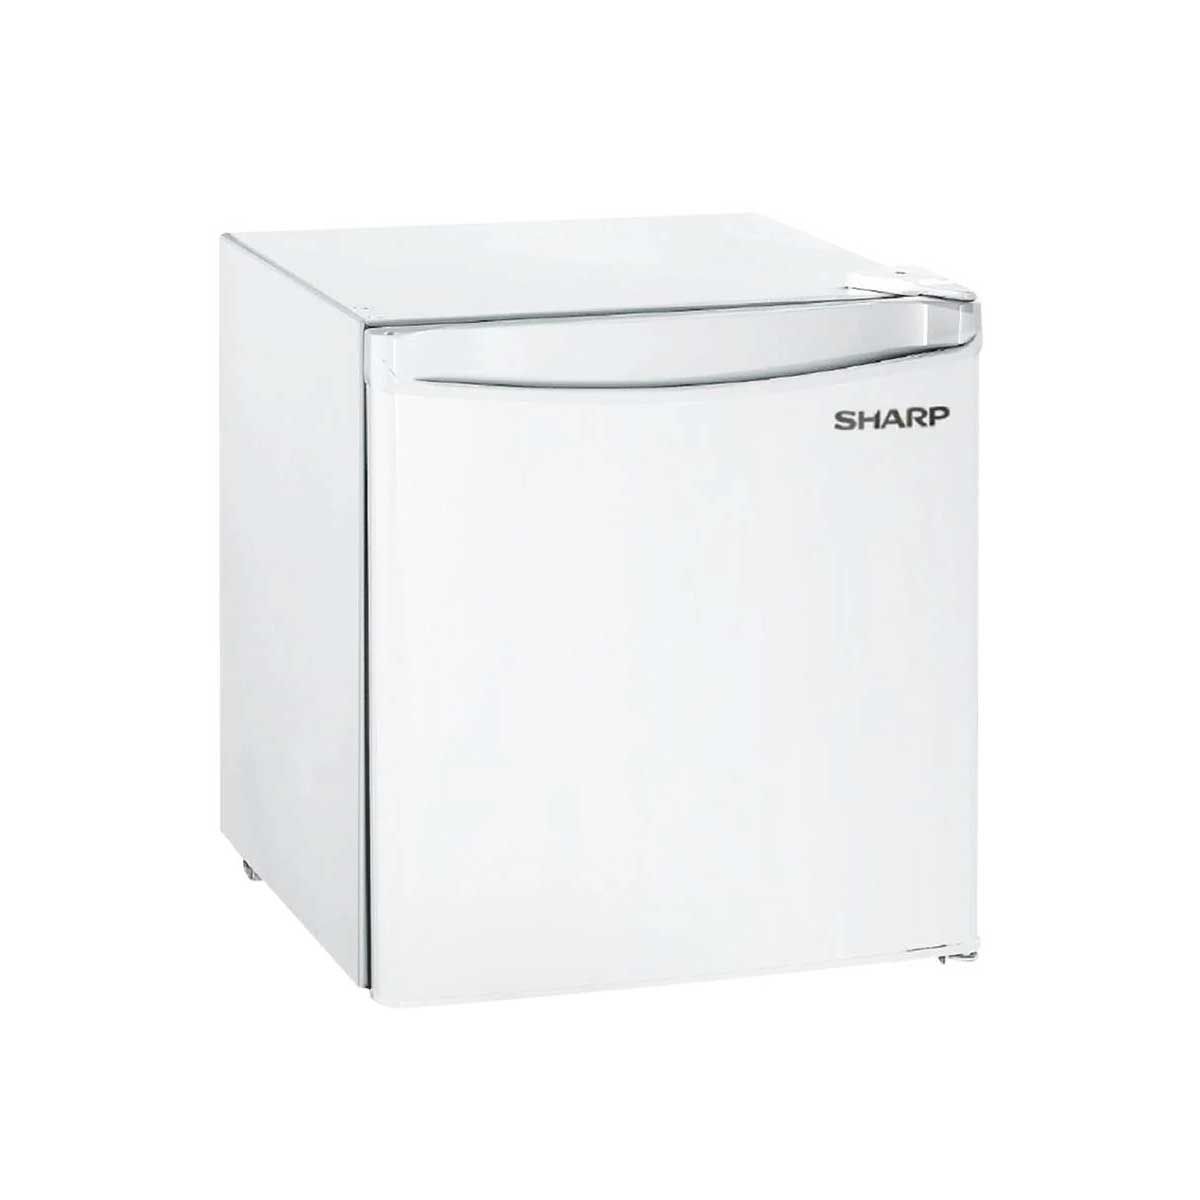 SHARP ตู้เย็นมินิบาร์ 1.7 คิว สีขาว รุ่น SJMB50W